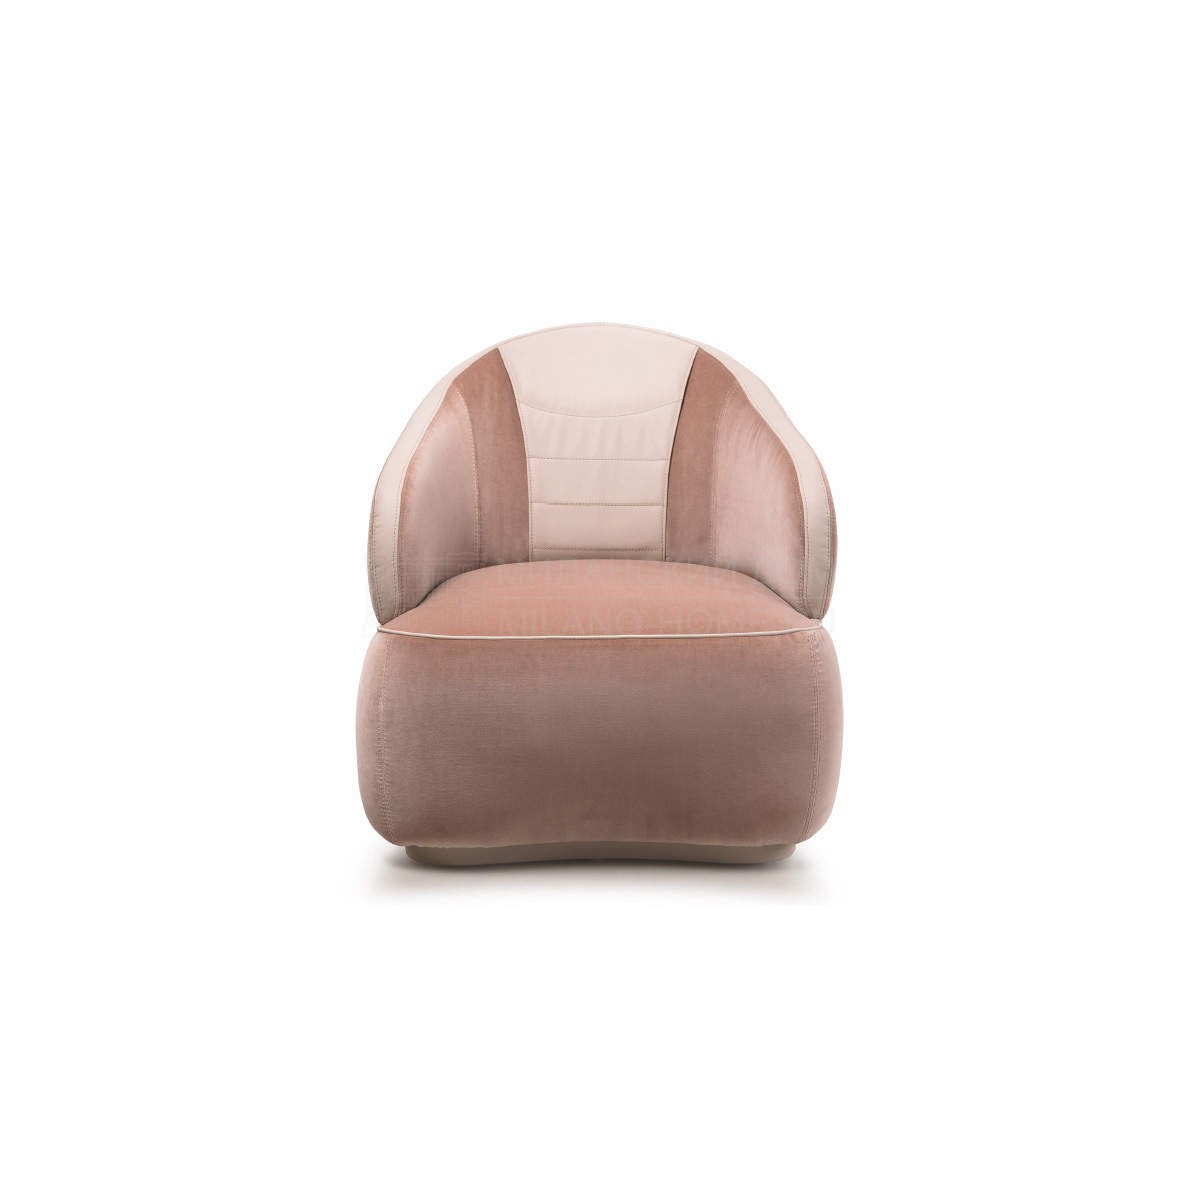 Кресло Bloom armchair из Италии фабрики TURRI